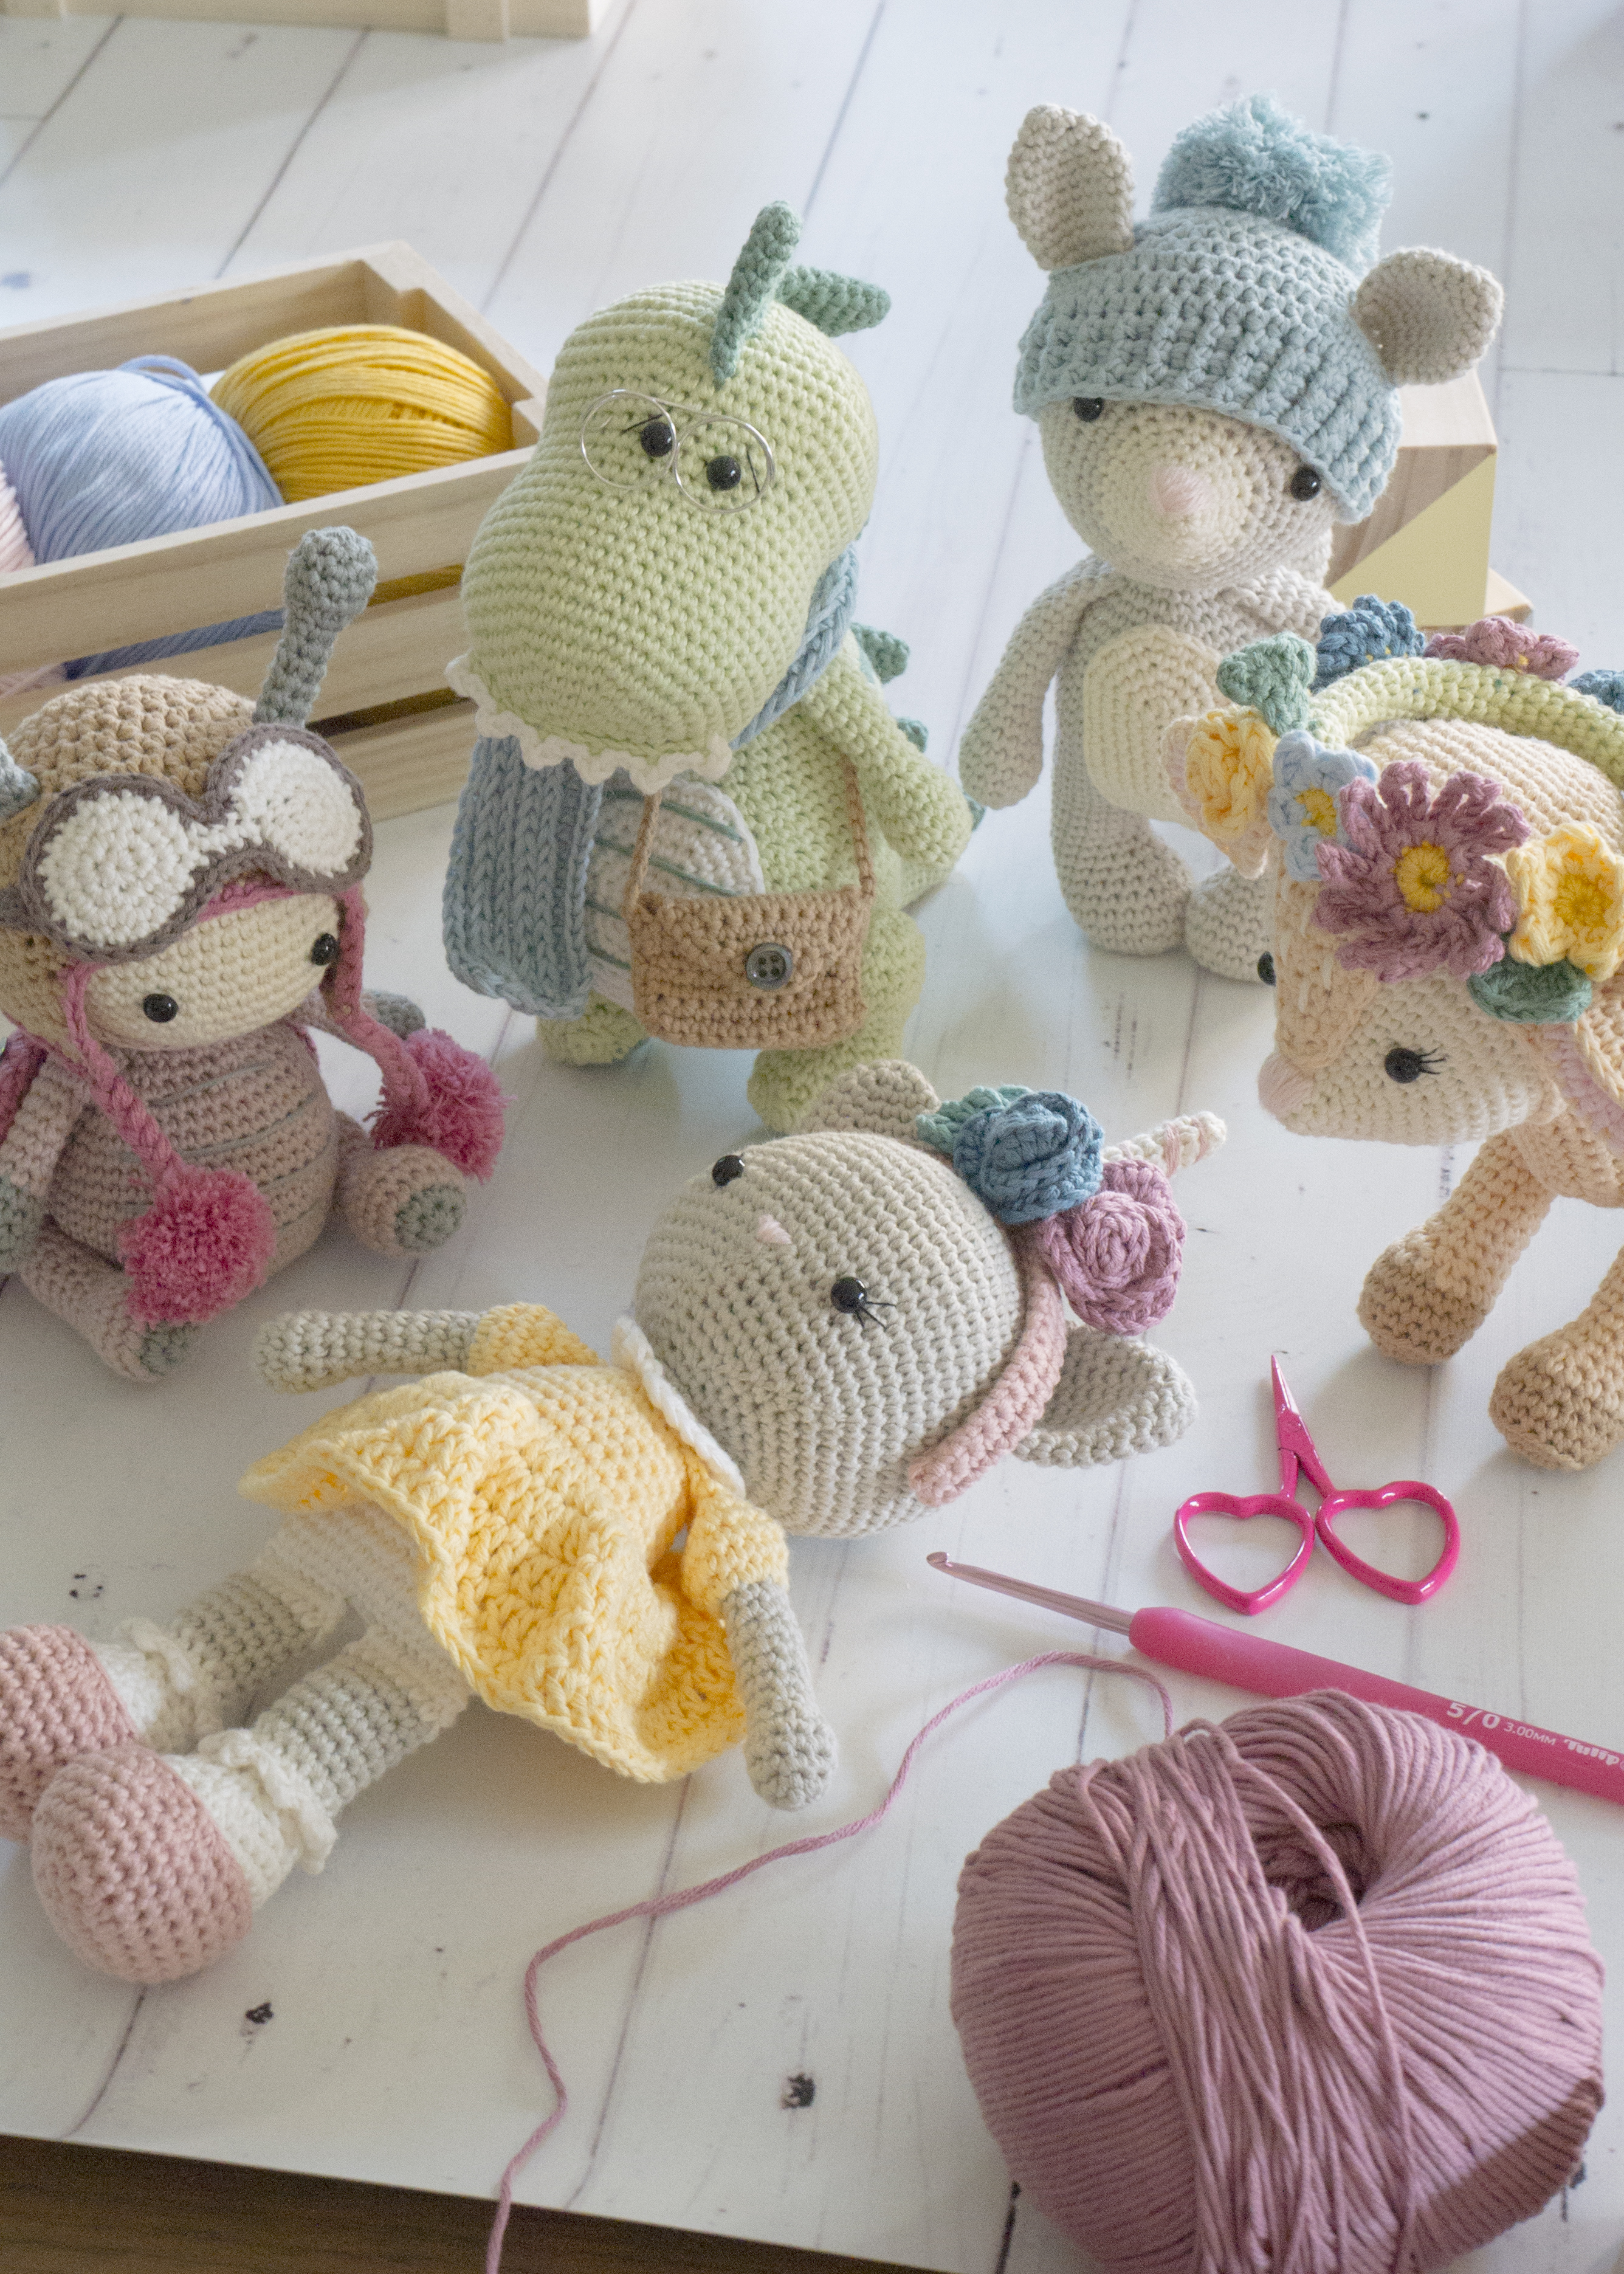 Amigurumi Treasures: 15 Crochet Projects to Cherish | Rakuten